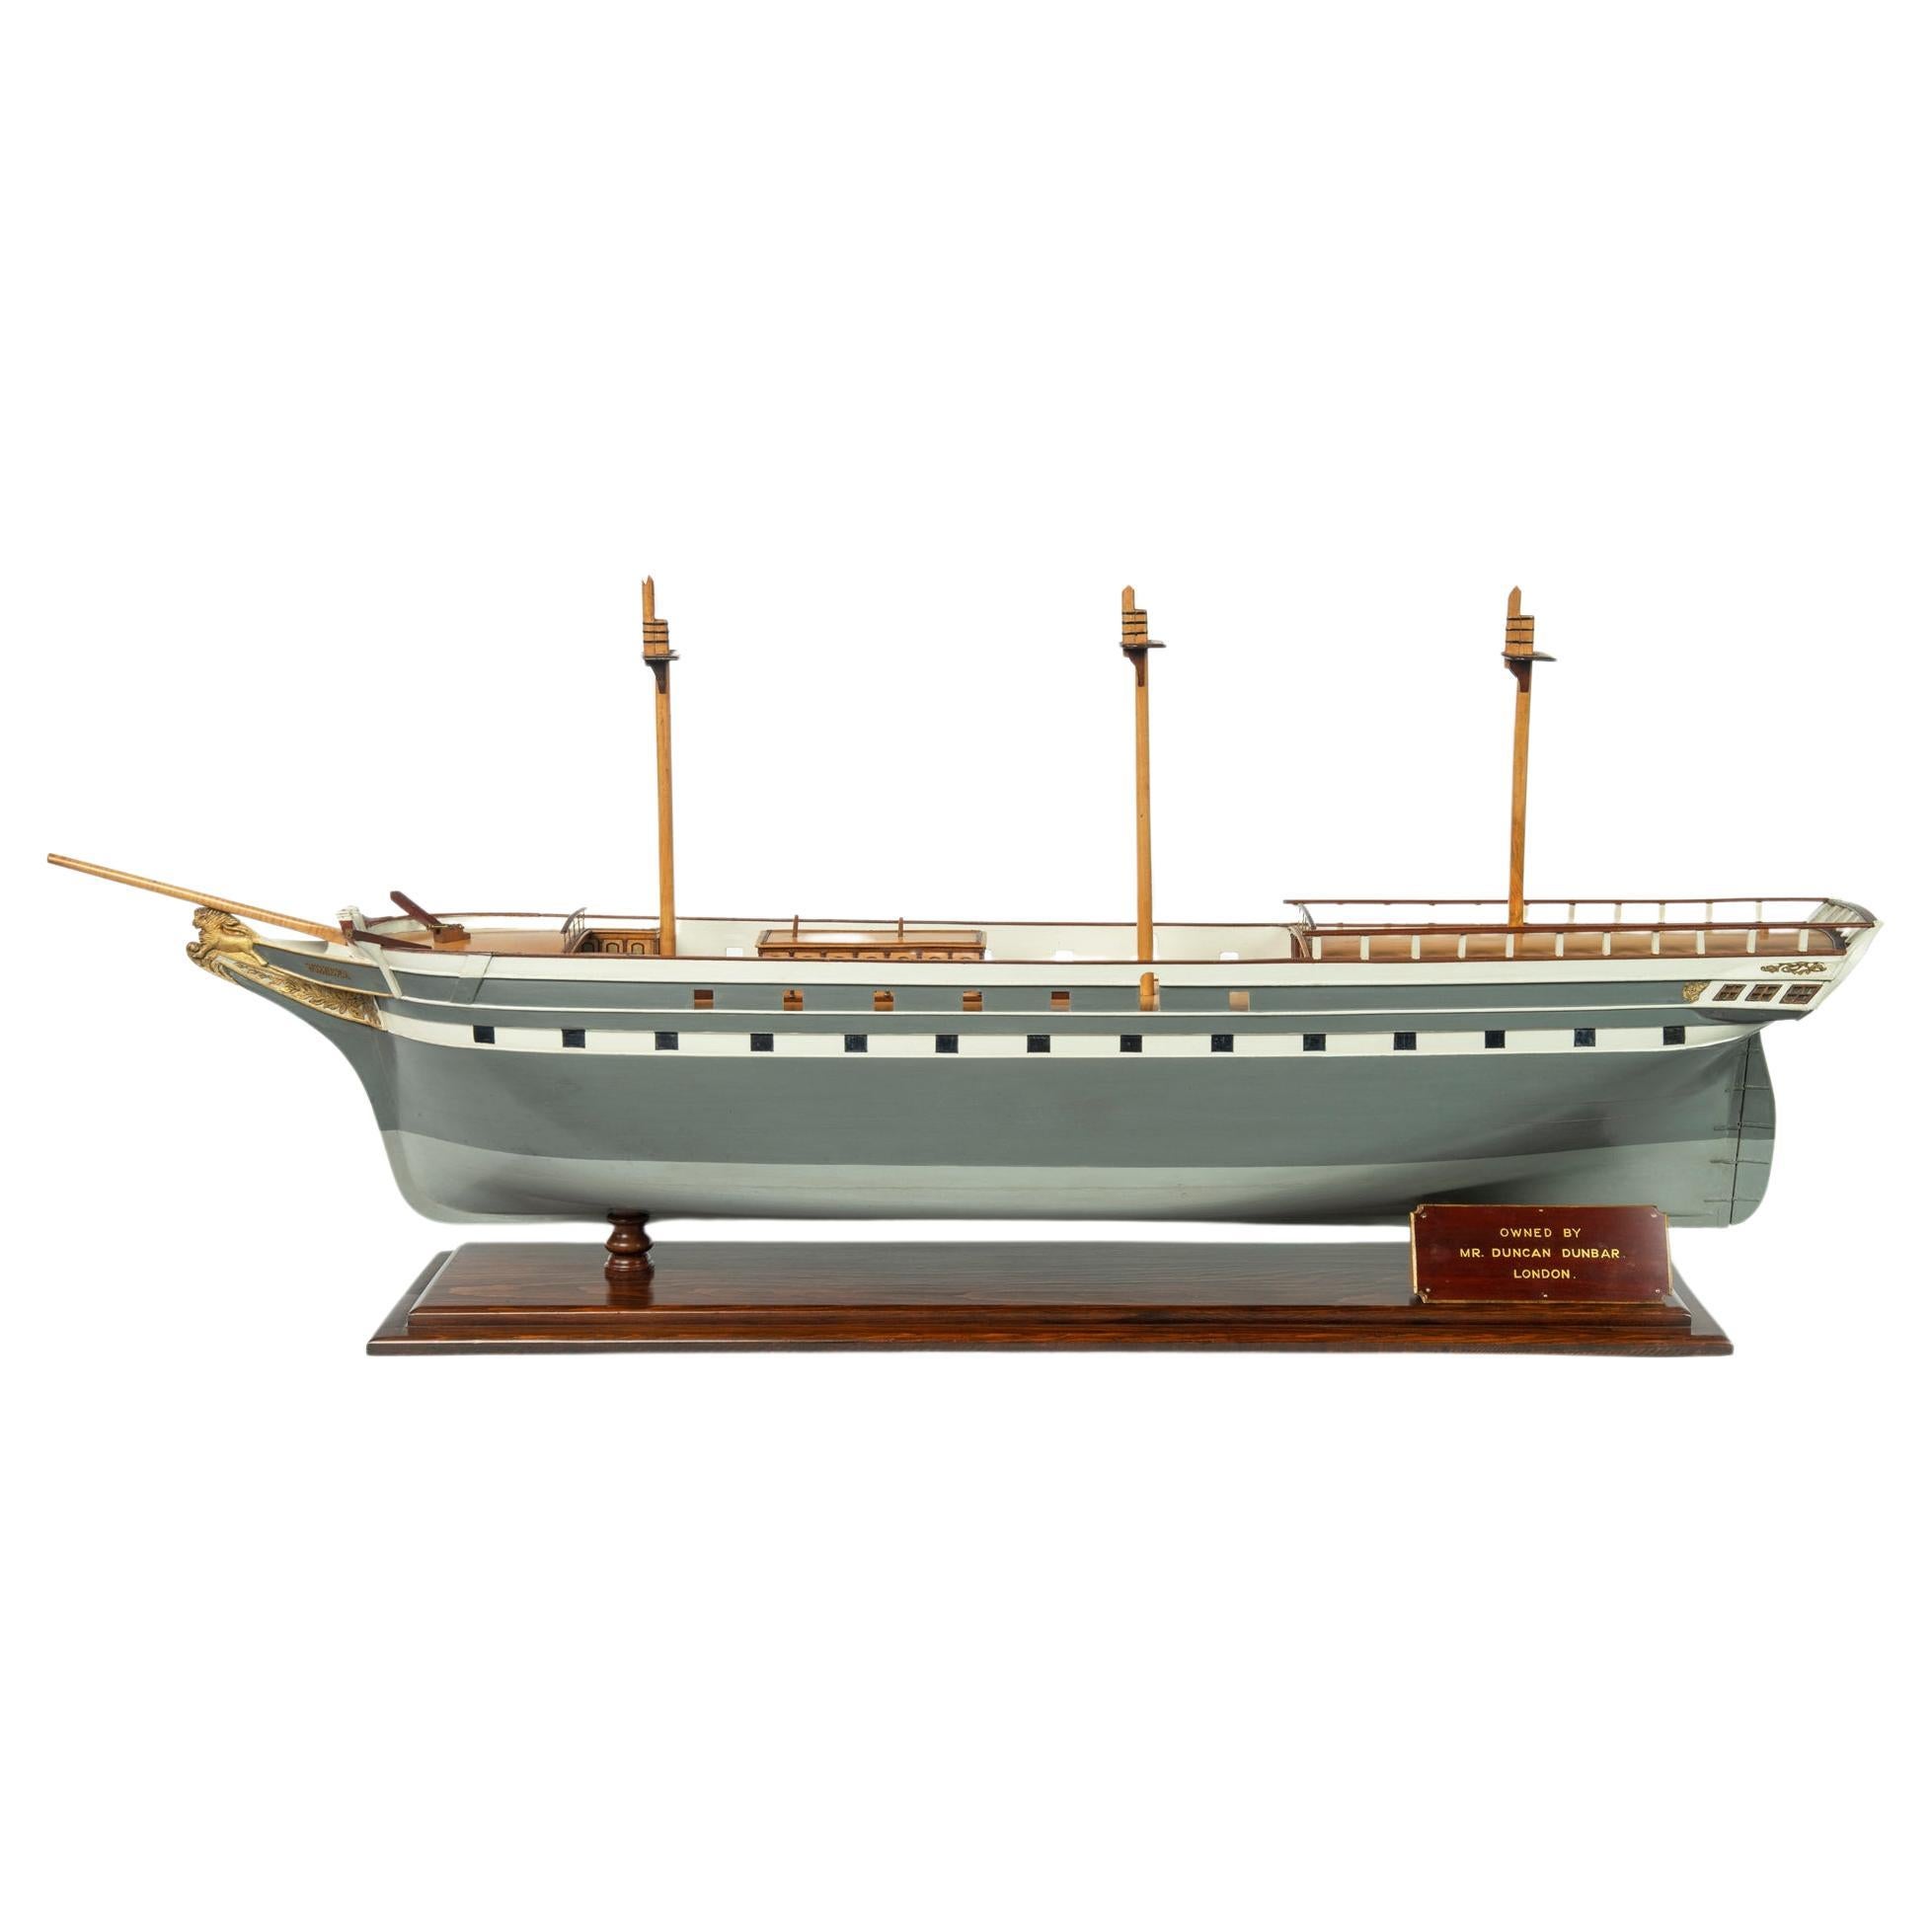 Ein schönes Modell des Segelschiffs Vimiera, gebaut für Duncan Dunbar, 1851